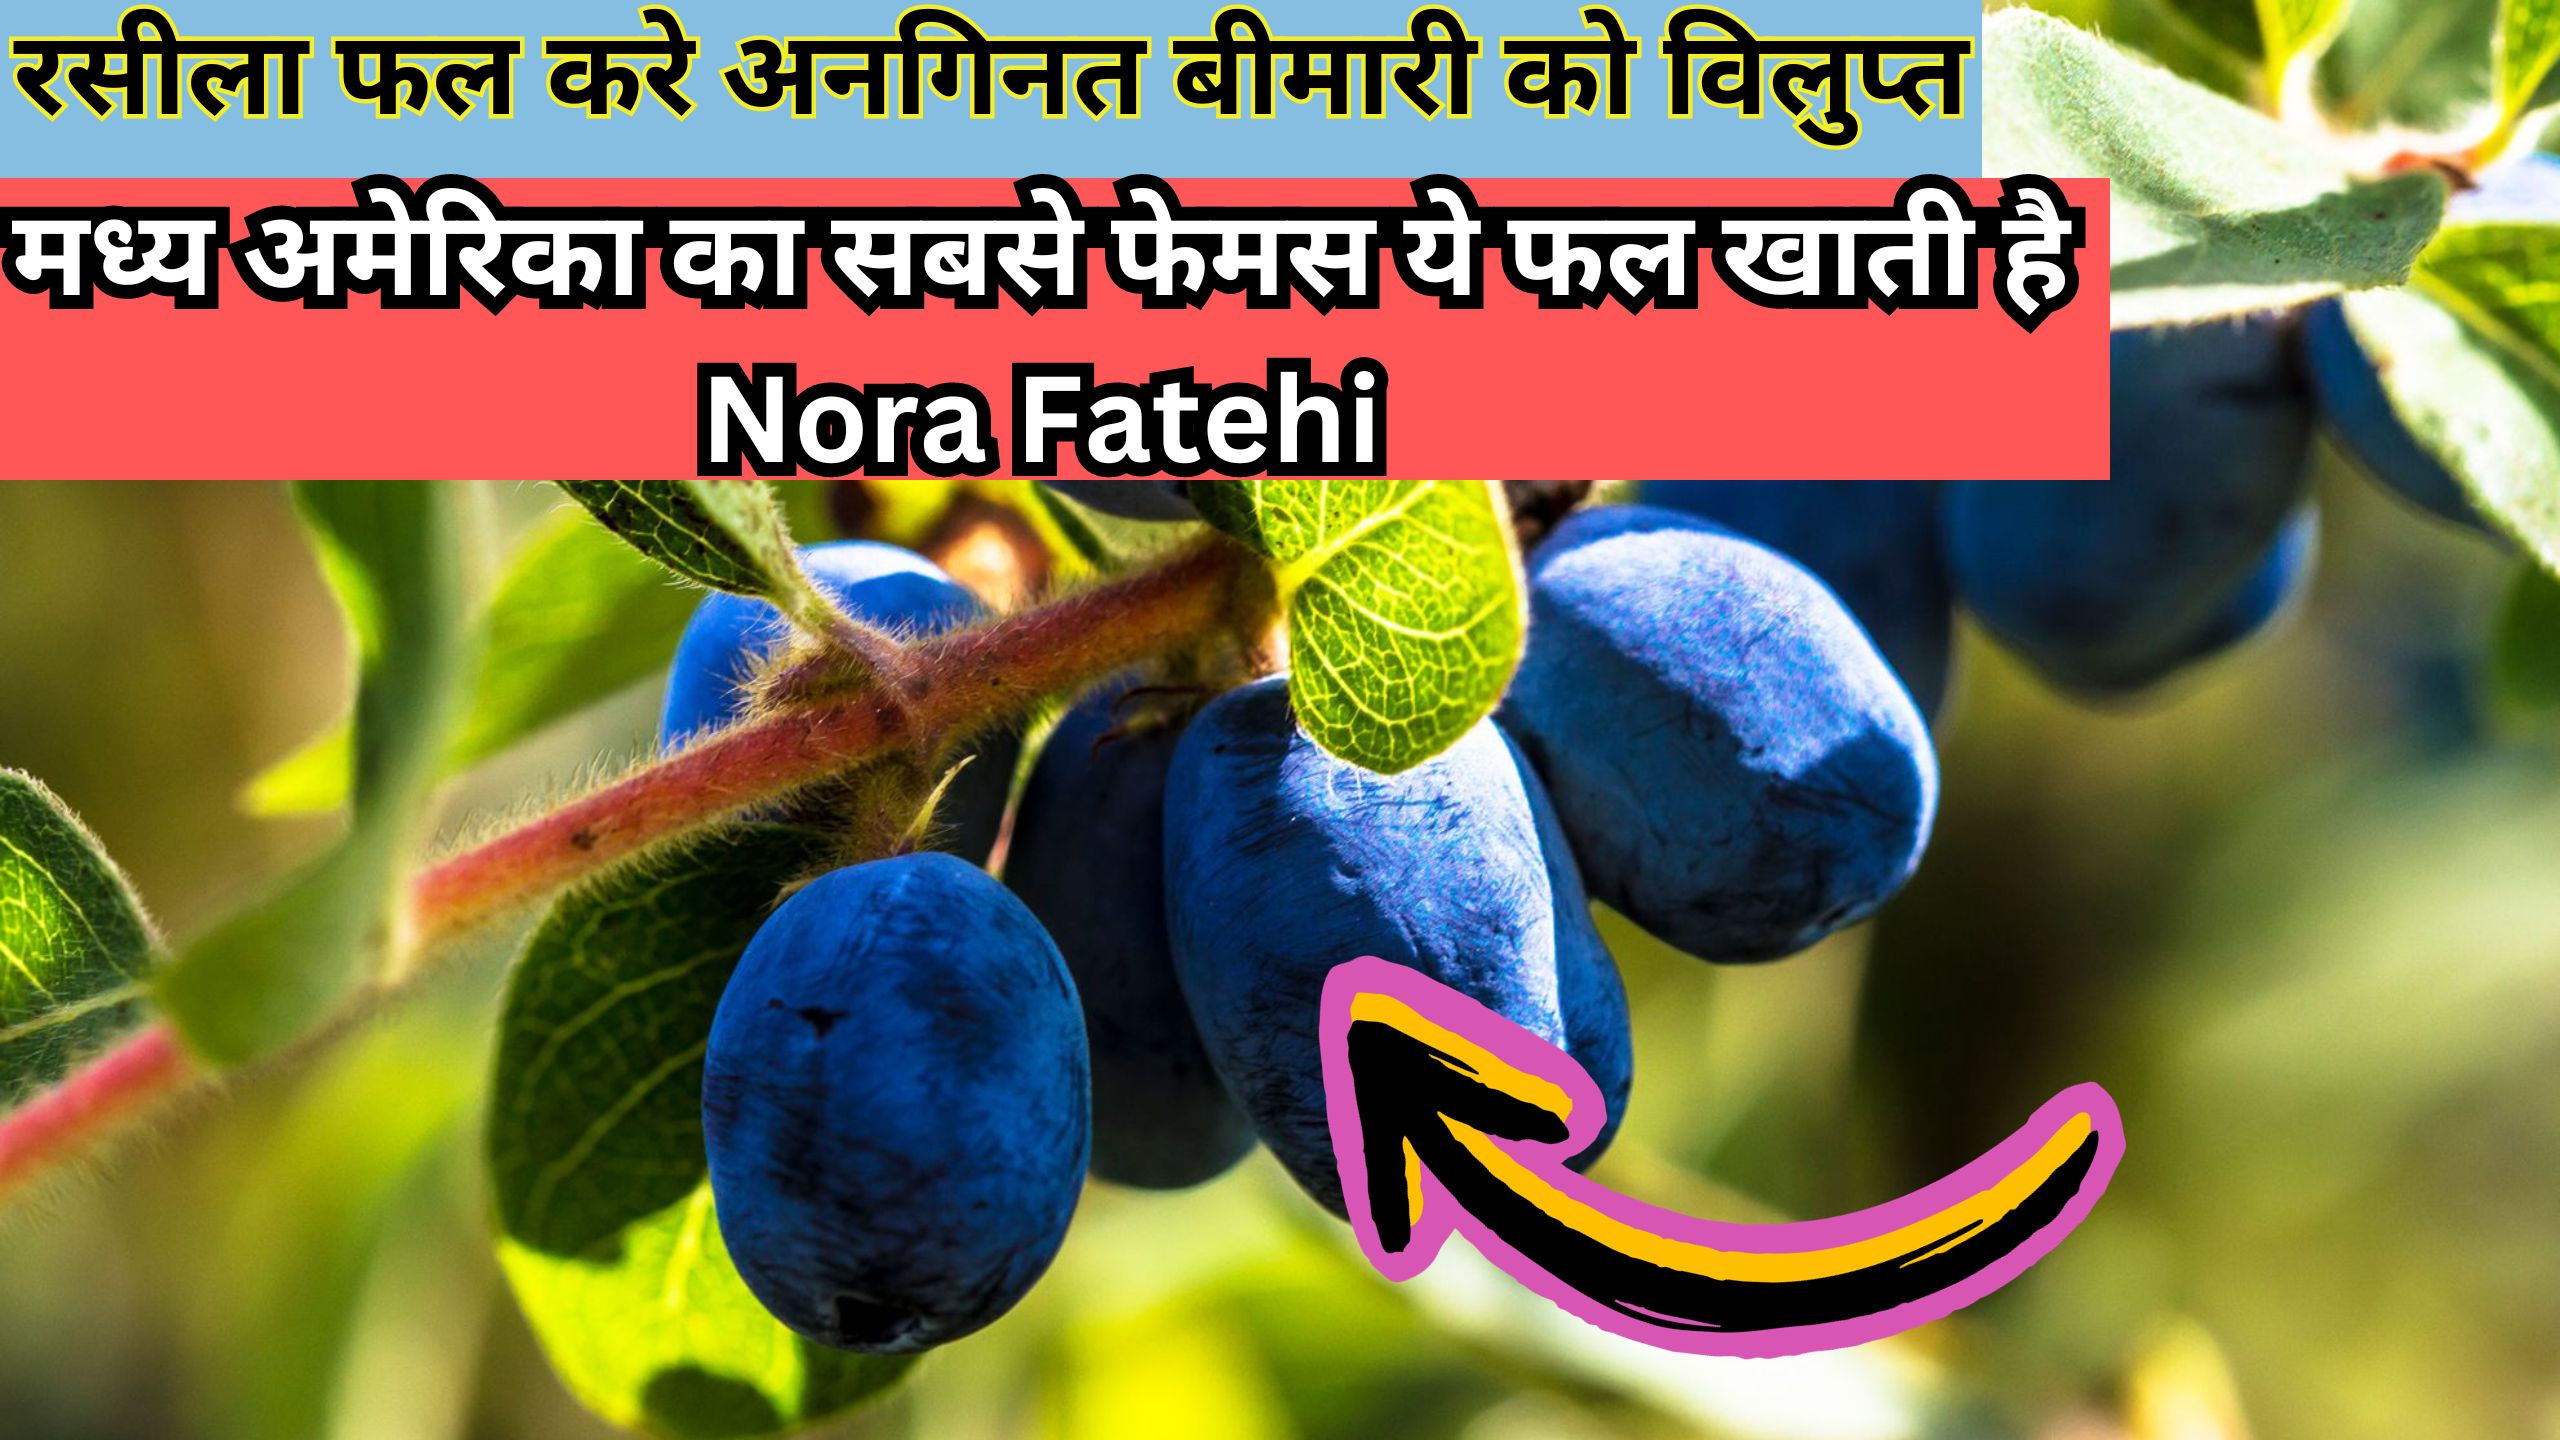 रसीला फल करे अनगिनत बीमारी को विलुप्त, मध्य अमेरिका का सबसे फेमस ये फल, खाती है Nora Fatehi, जानिए इस फल का नाम  